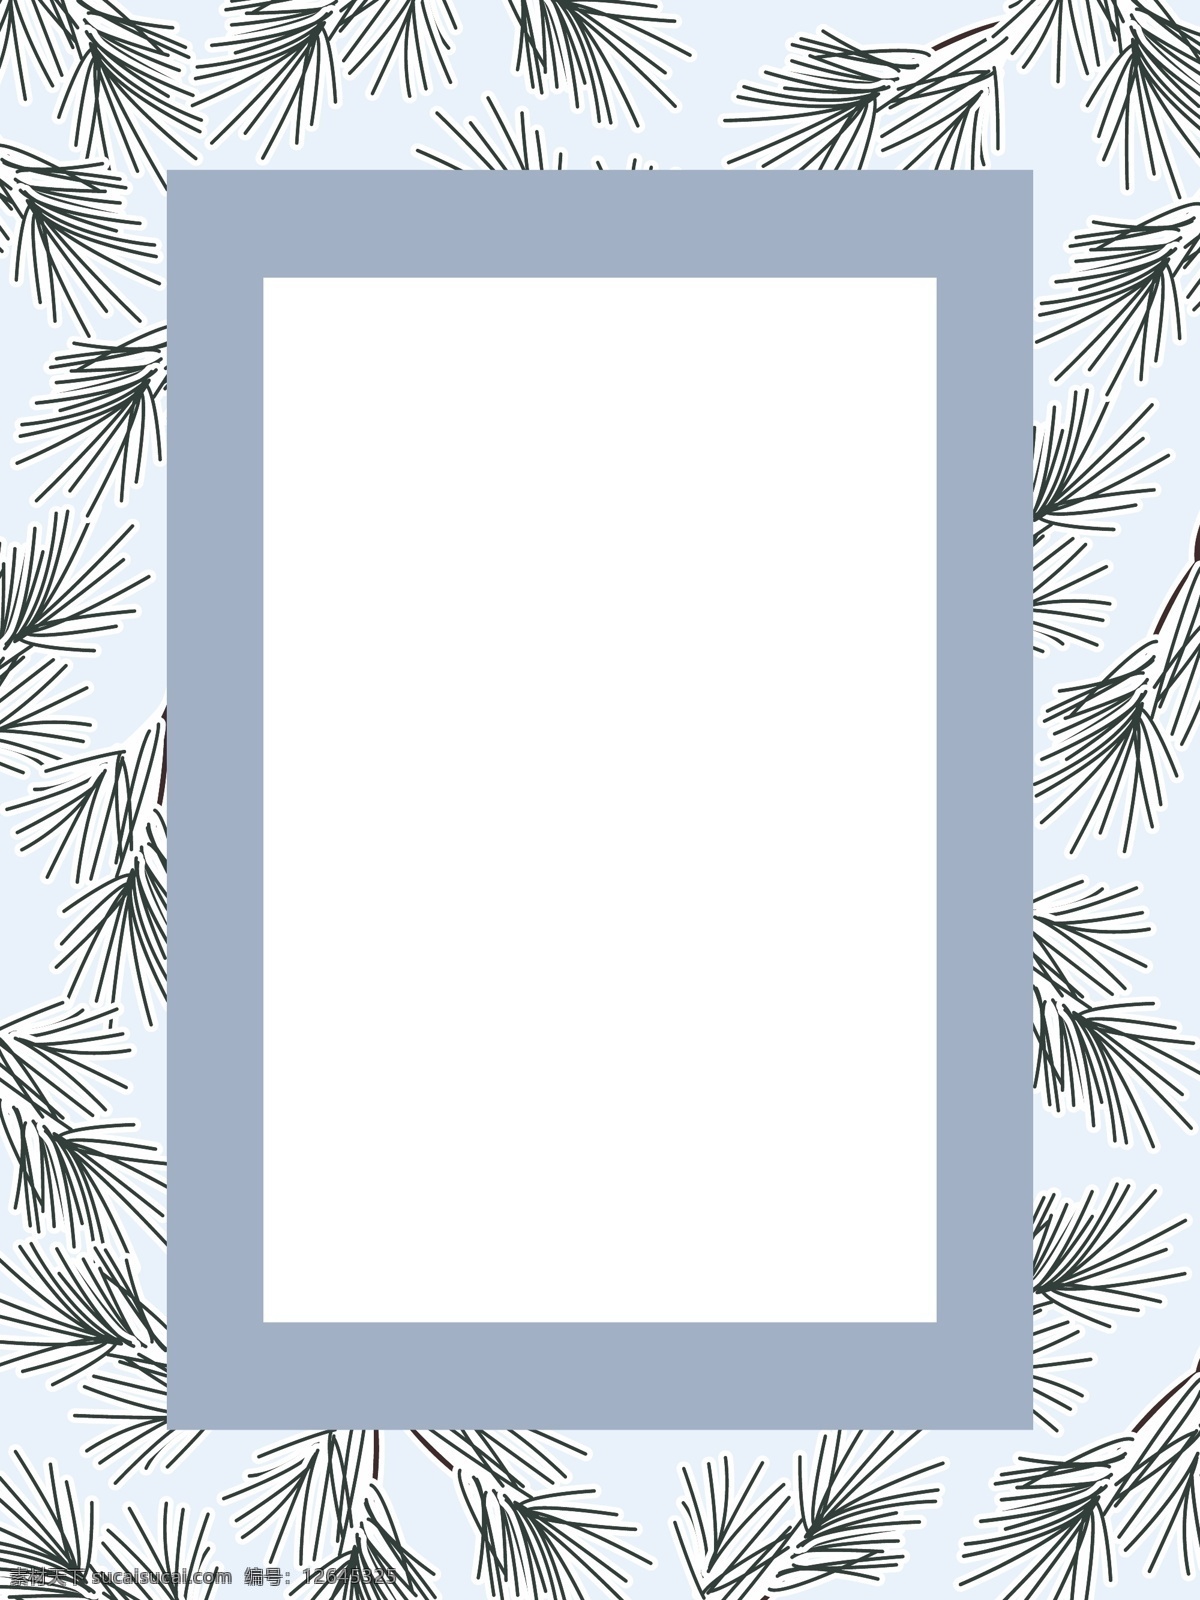 背景画框 冬季 背景 画框 松枝 松树 矢量图 相框 底纹边框 边框相框